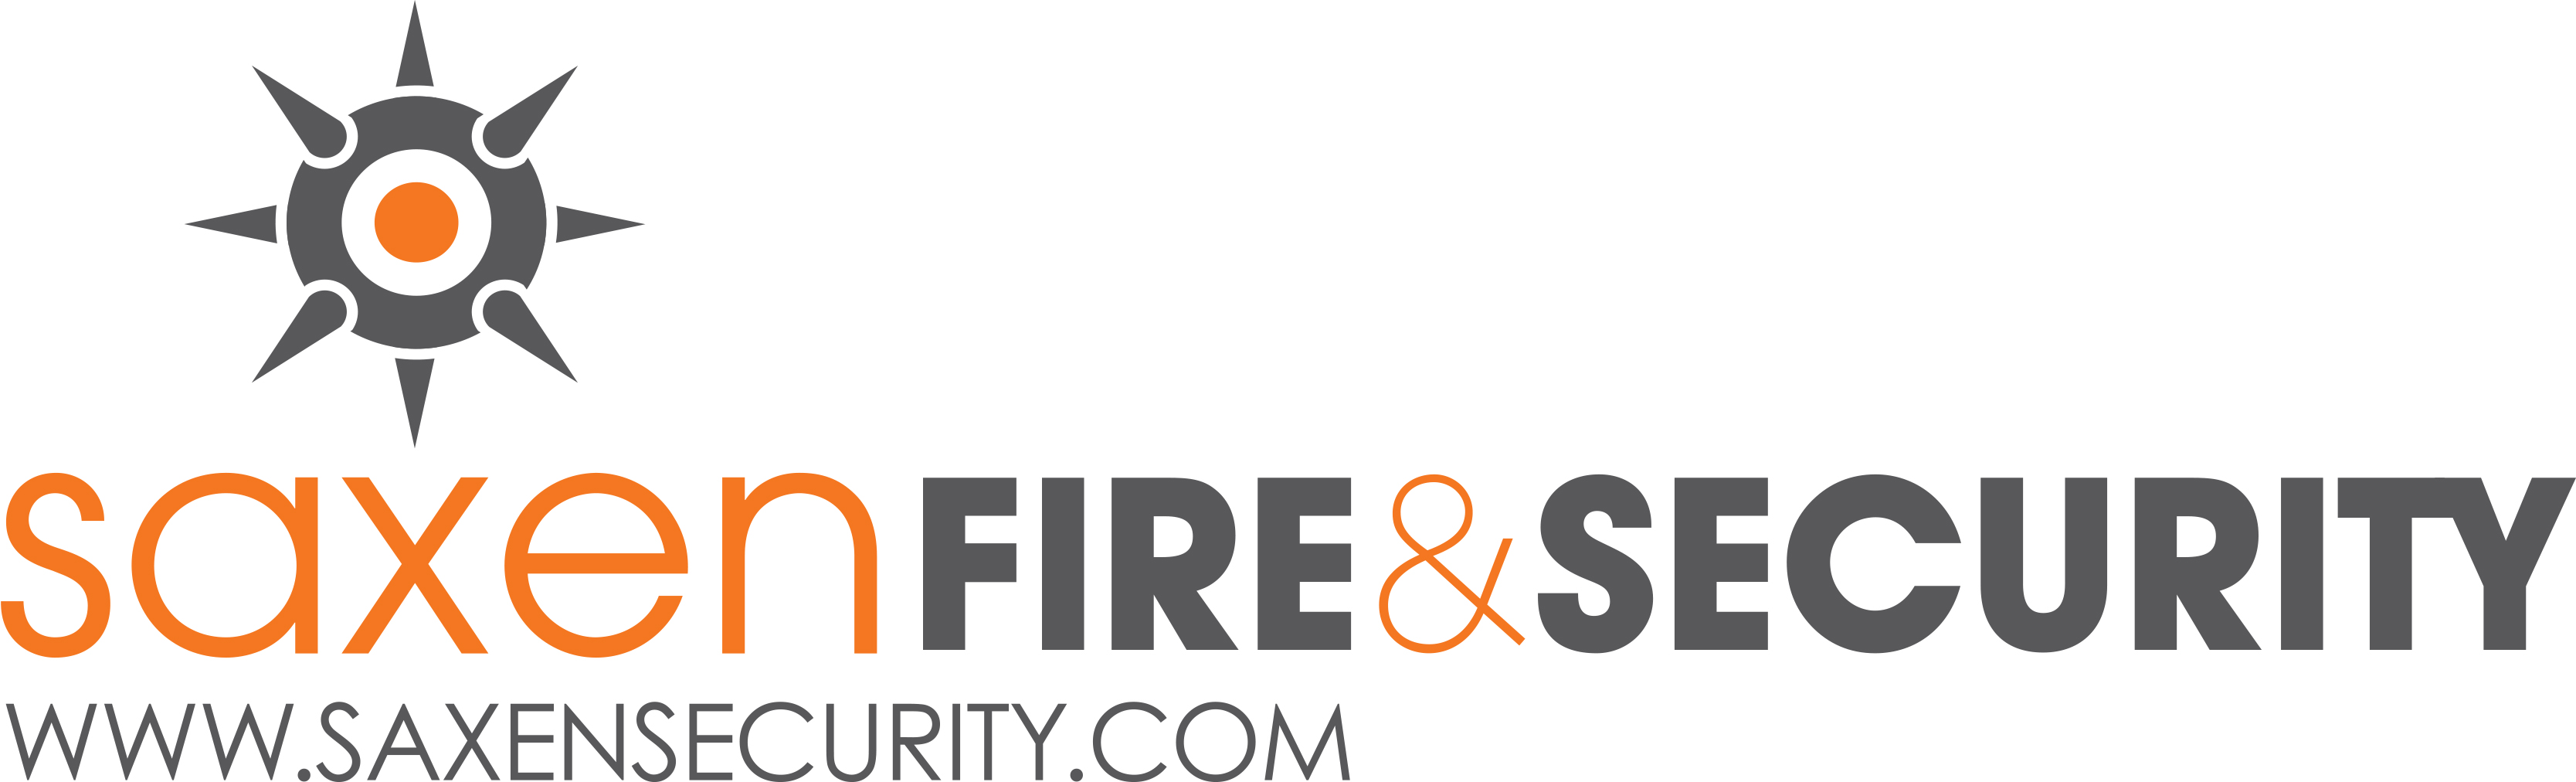 logo for Saxen fire & security